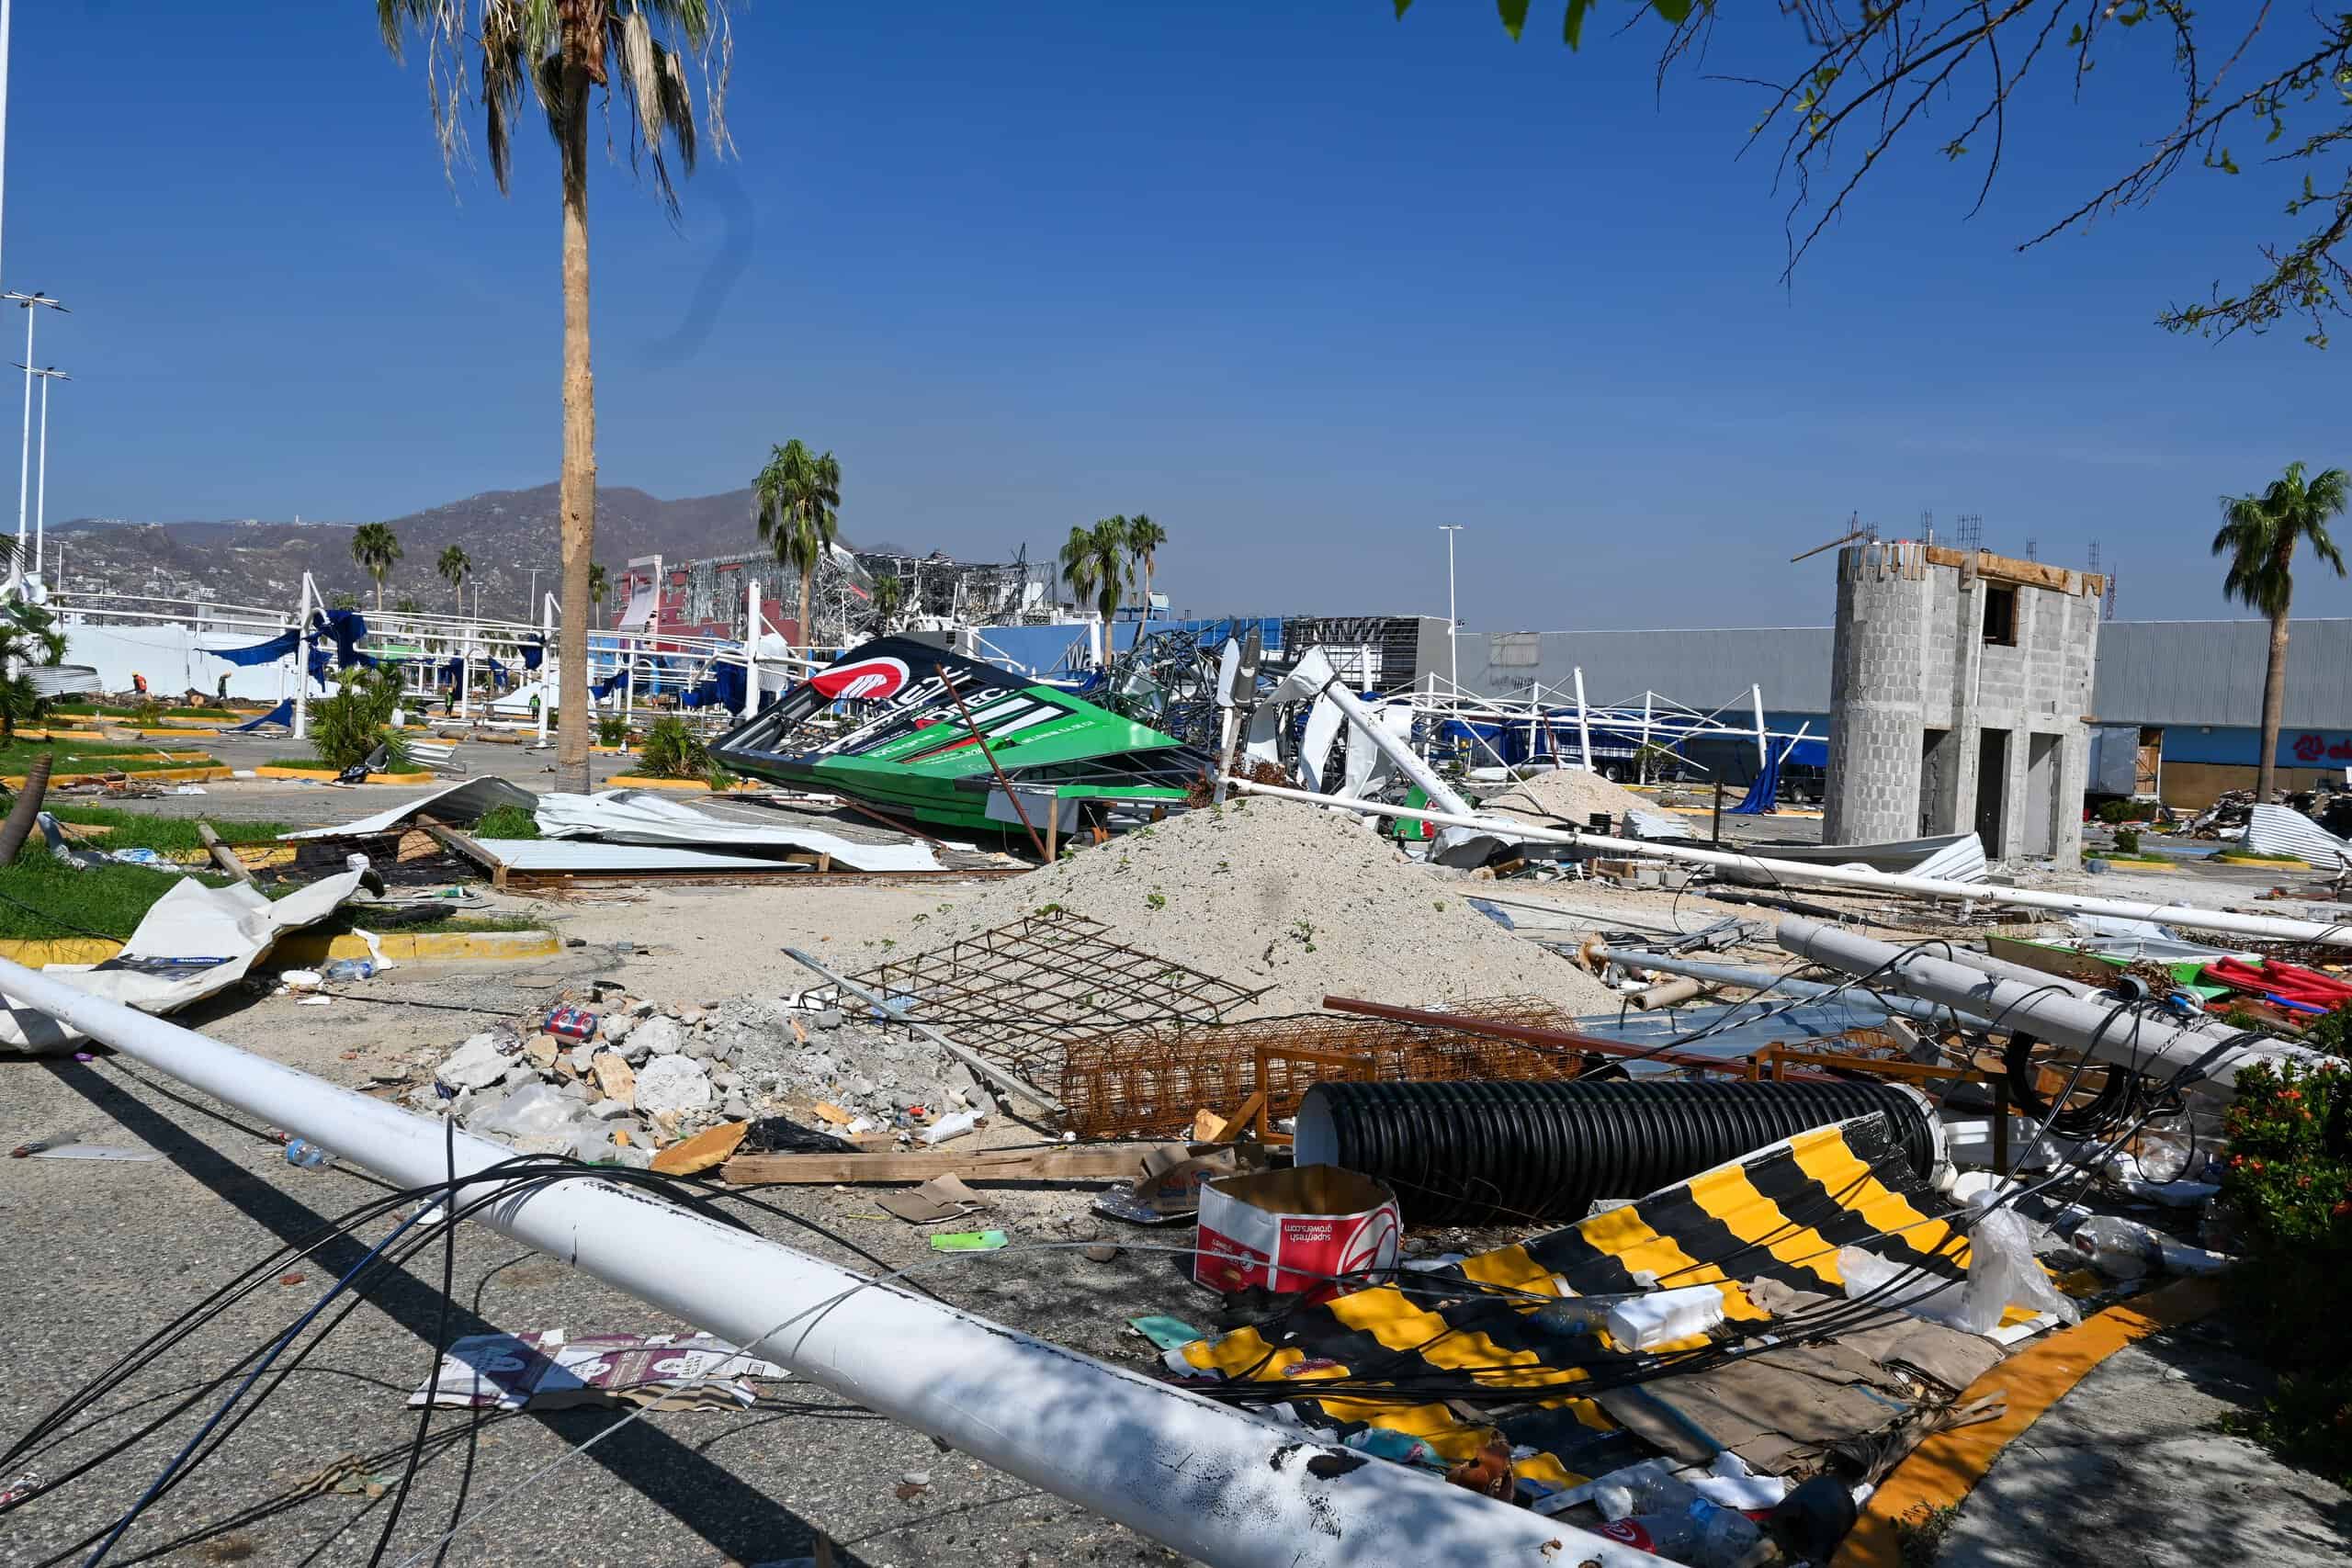 Impacto del huracu00e1n Otis en Mu00e9xico - Boulevard de las Naciones - 2 by ProtoplasmaKid